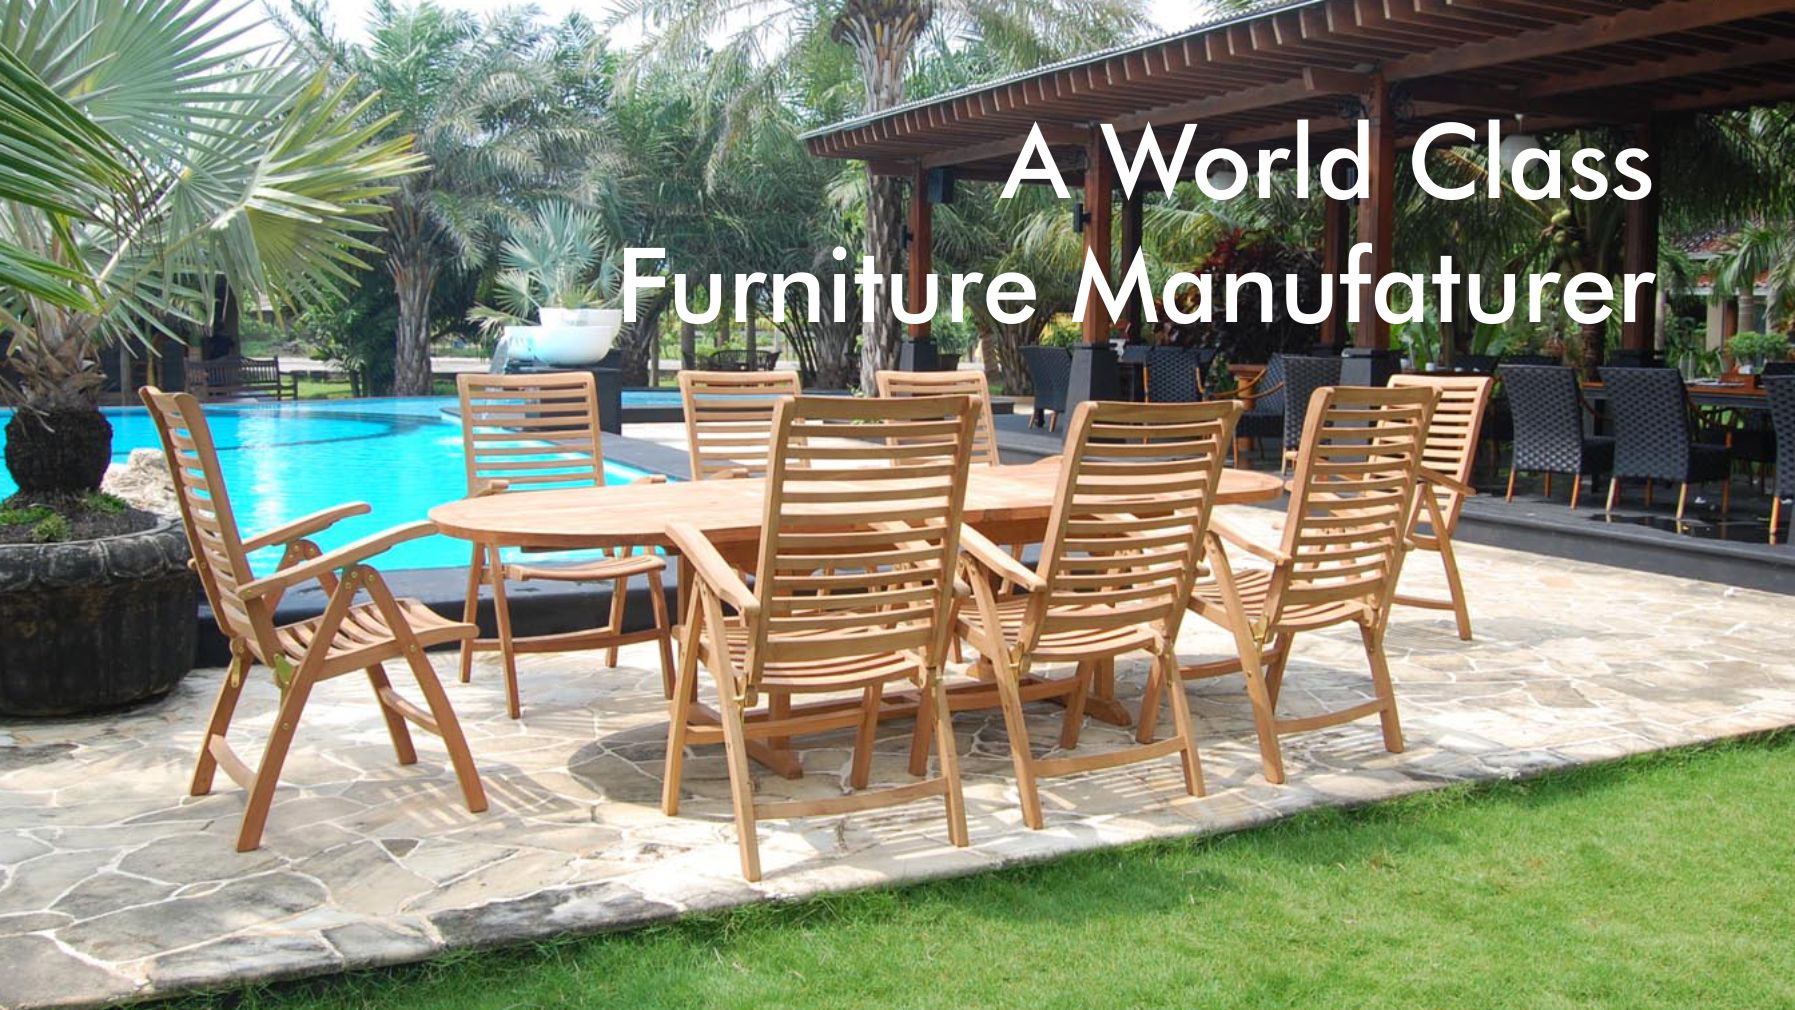 A World Class Furniture Manufacturer